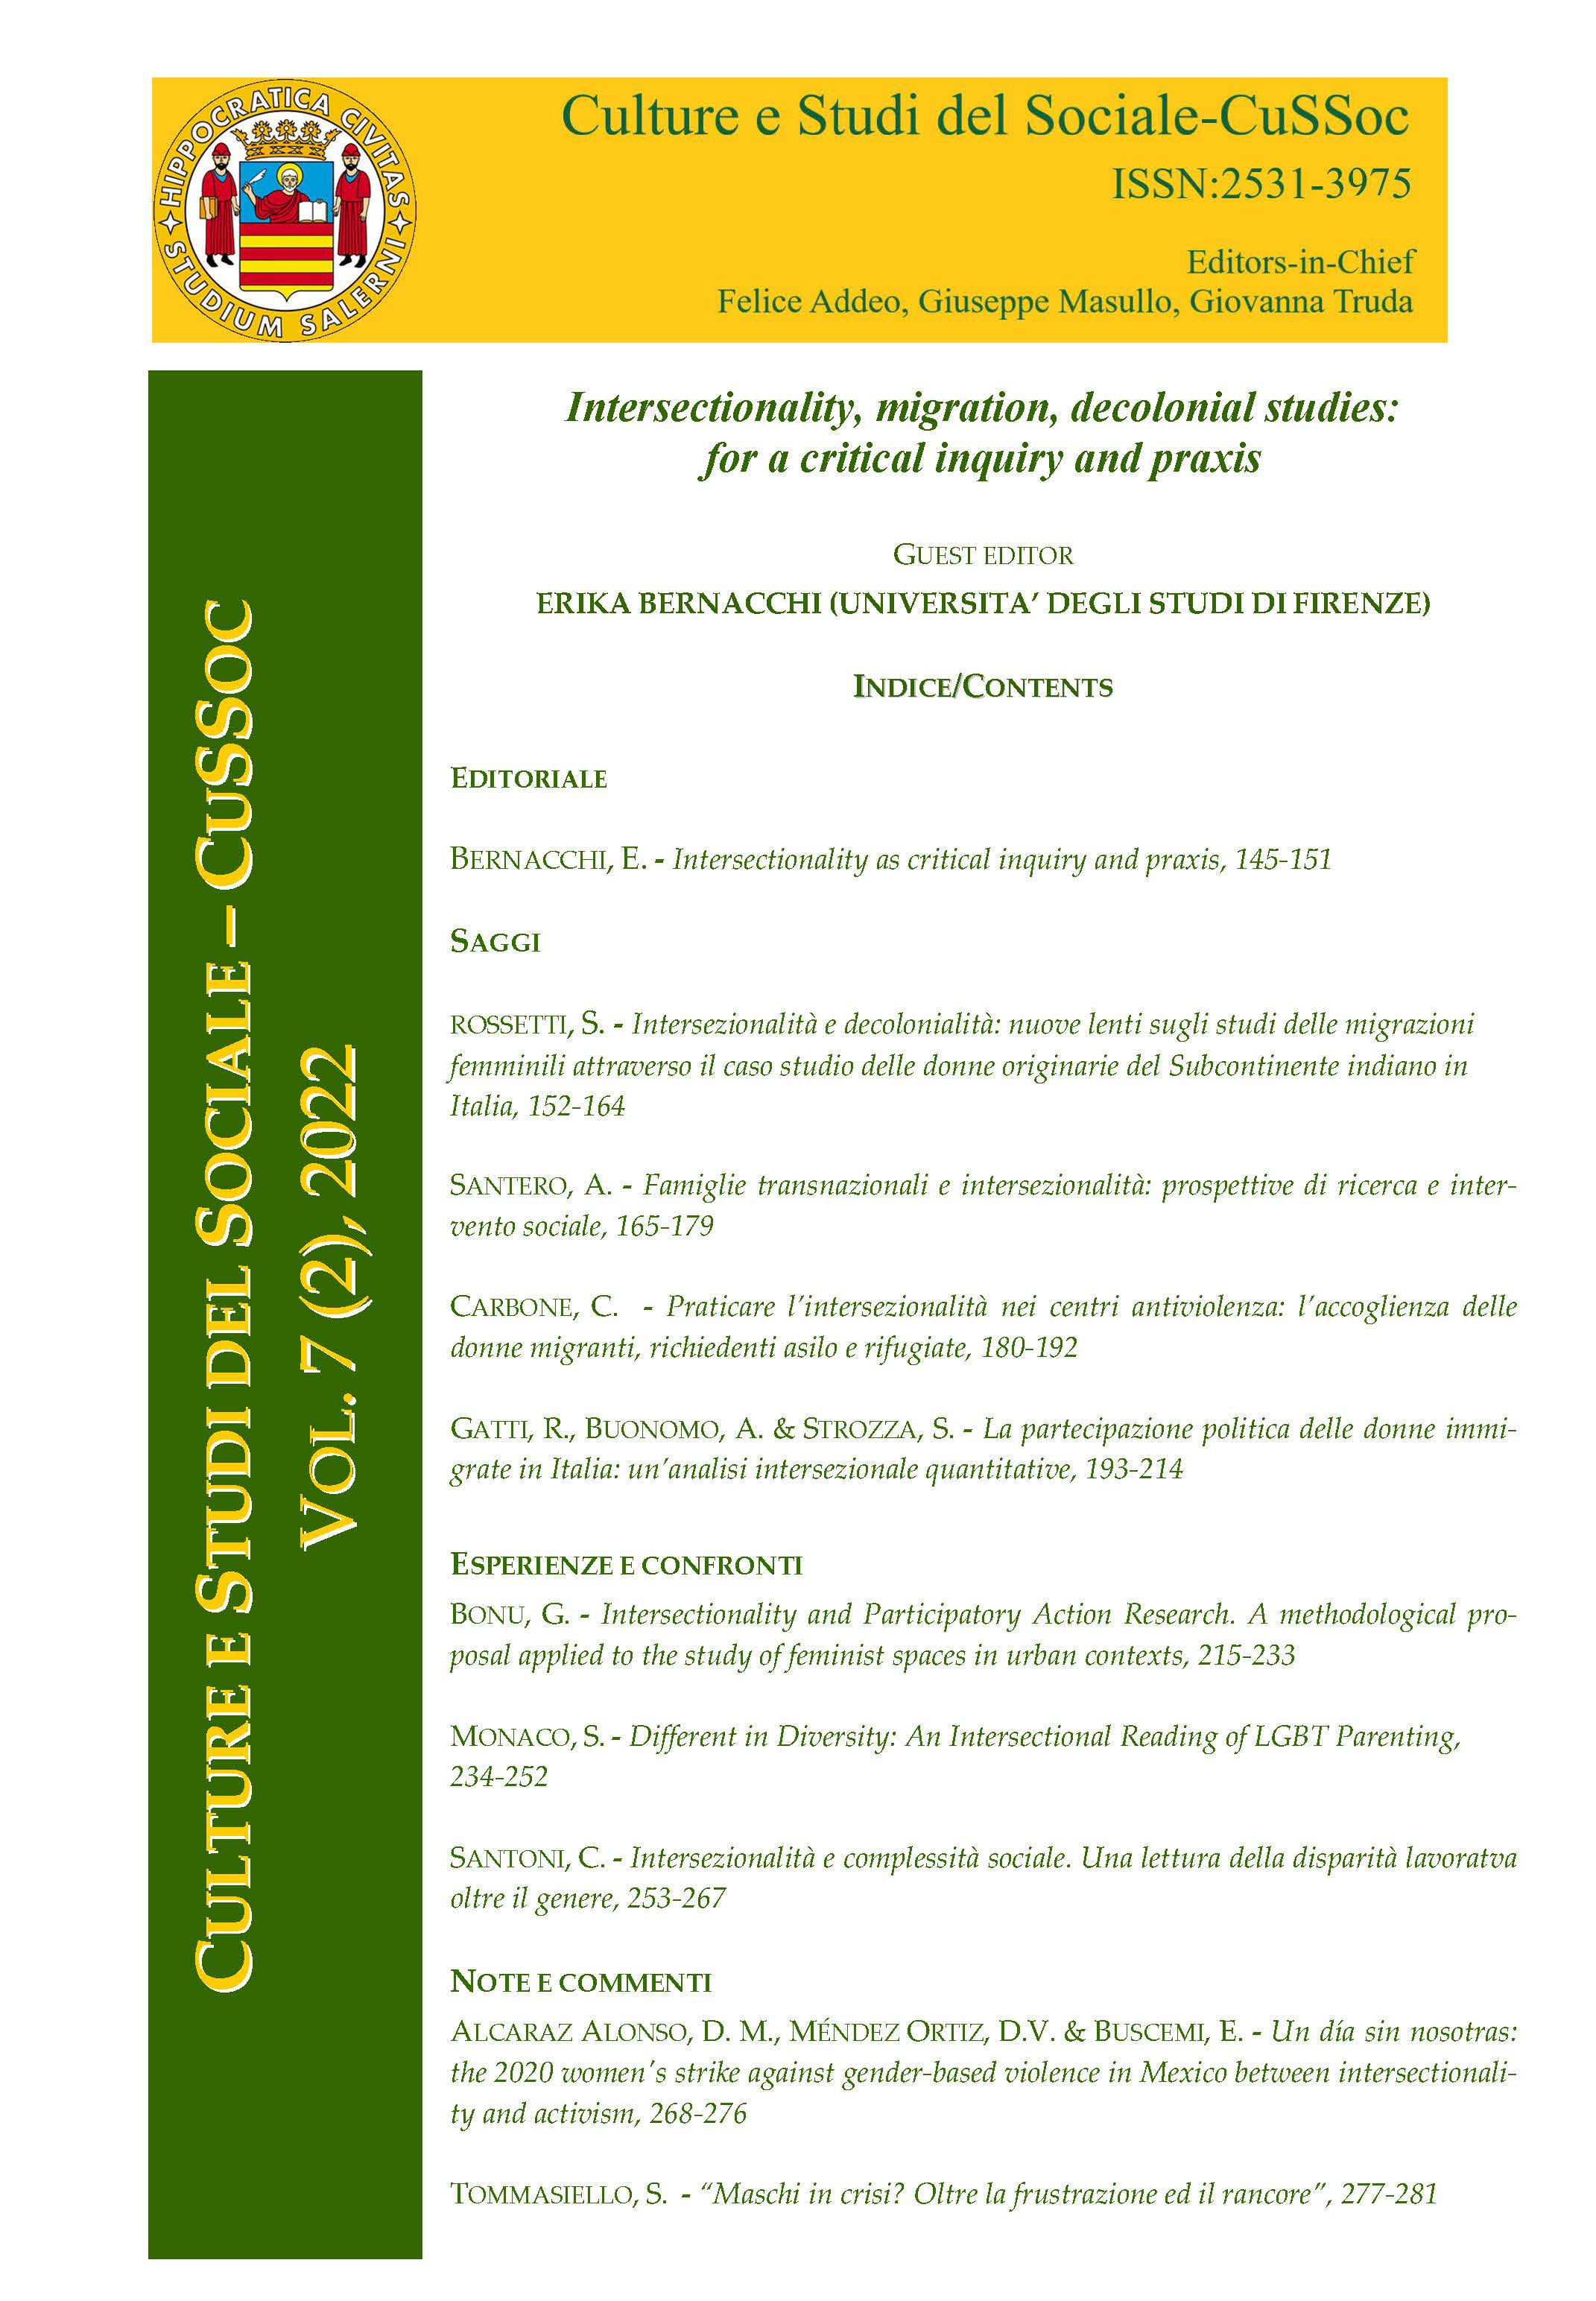 					View Vol. 7 No. 2 (2022): Intersezionalità, migrazioni, studi decoloniali: per un'indagine e prassi critica. Guest editor: Erika Bernacchi (Università di Firenze)
				